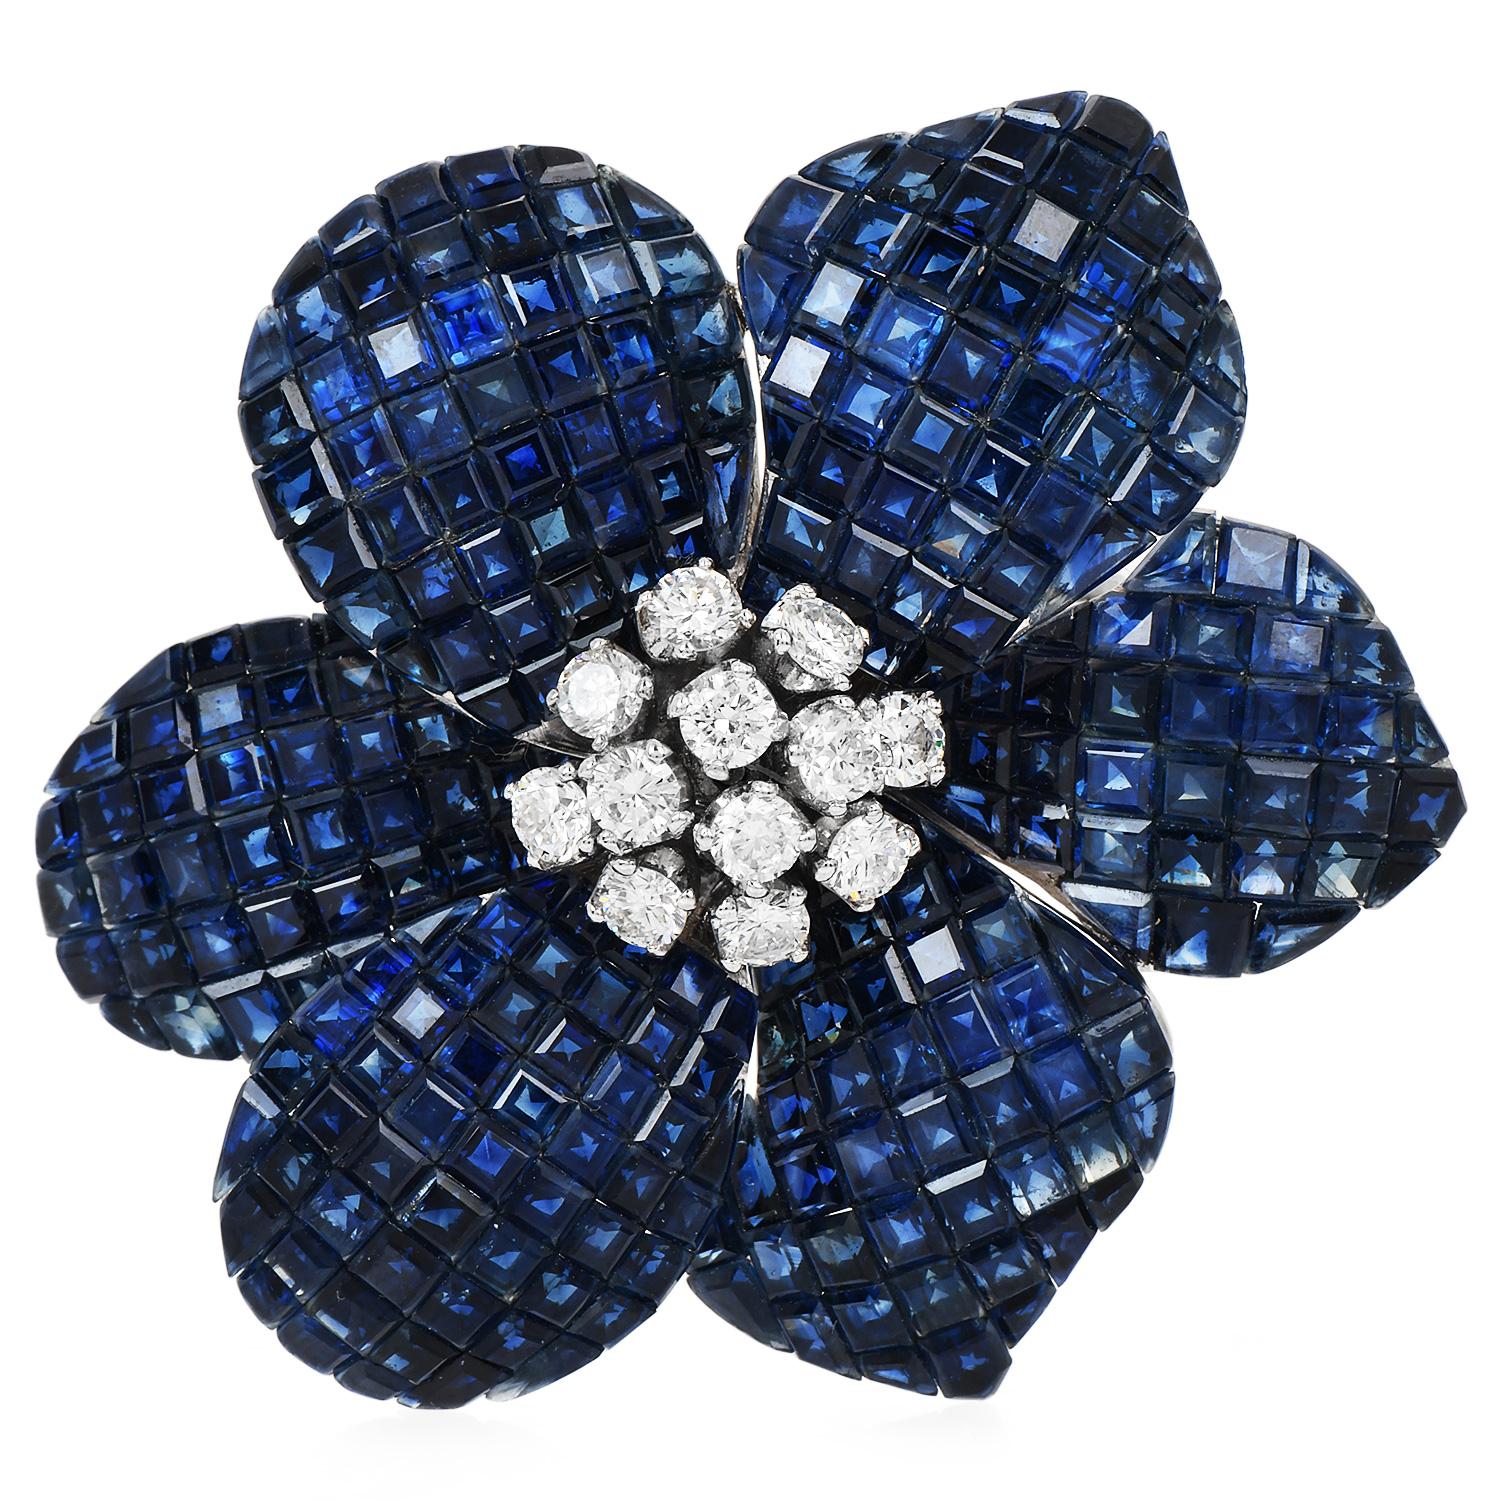 La broche fleur en or blanc 18 carats, diamant bleu saphir vintage, est le complément idéal d'une écharpe ou d'un chemisier.

Réalisé en or blanc 18 carats, il présente un attrait intemporel et une brillance éclatante.

Le point central de cette